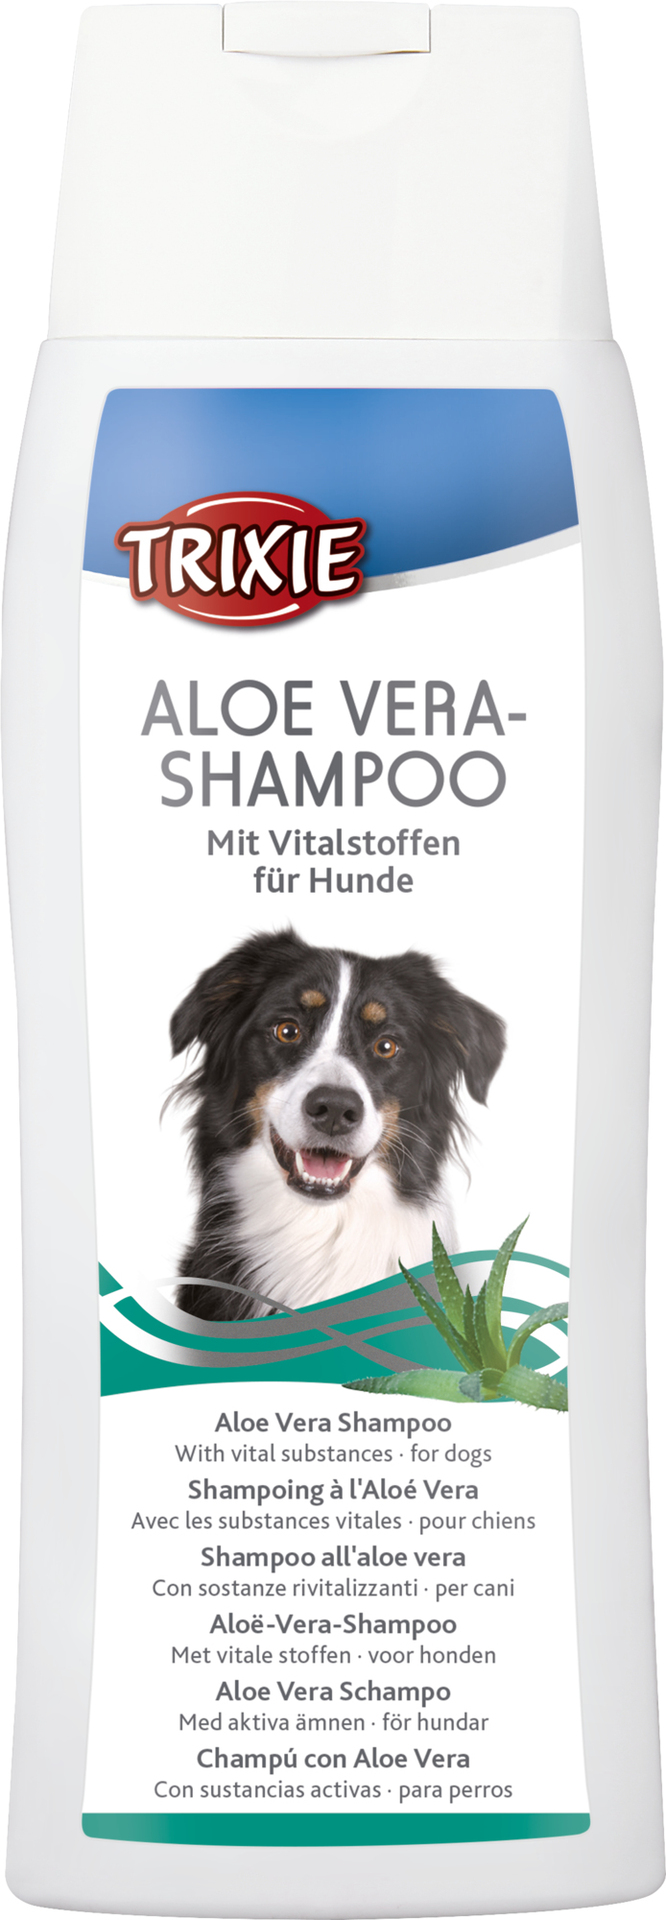 TRIXIE Aloe Vera-Shampoo